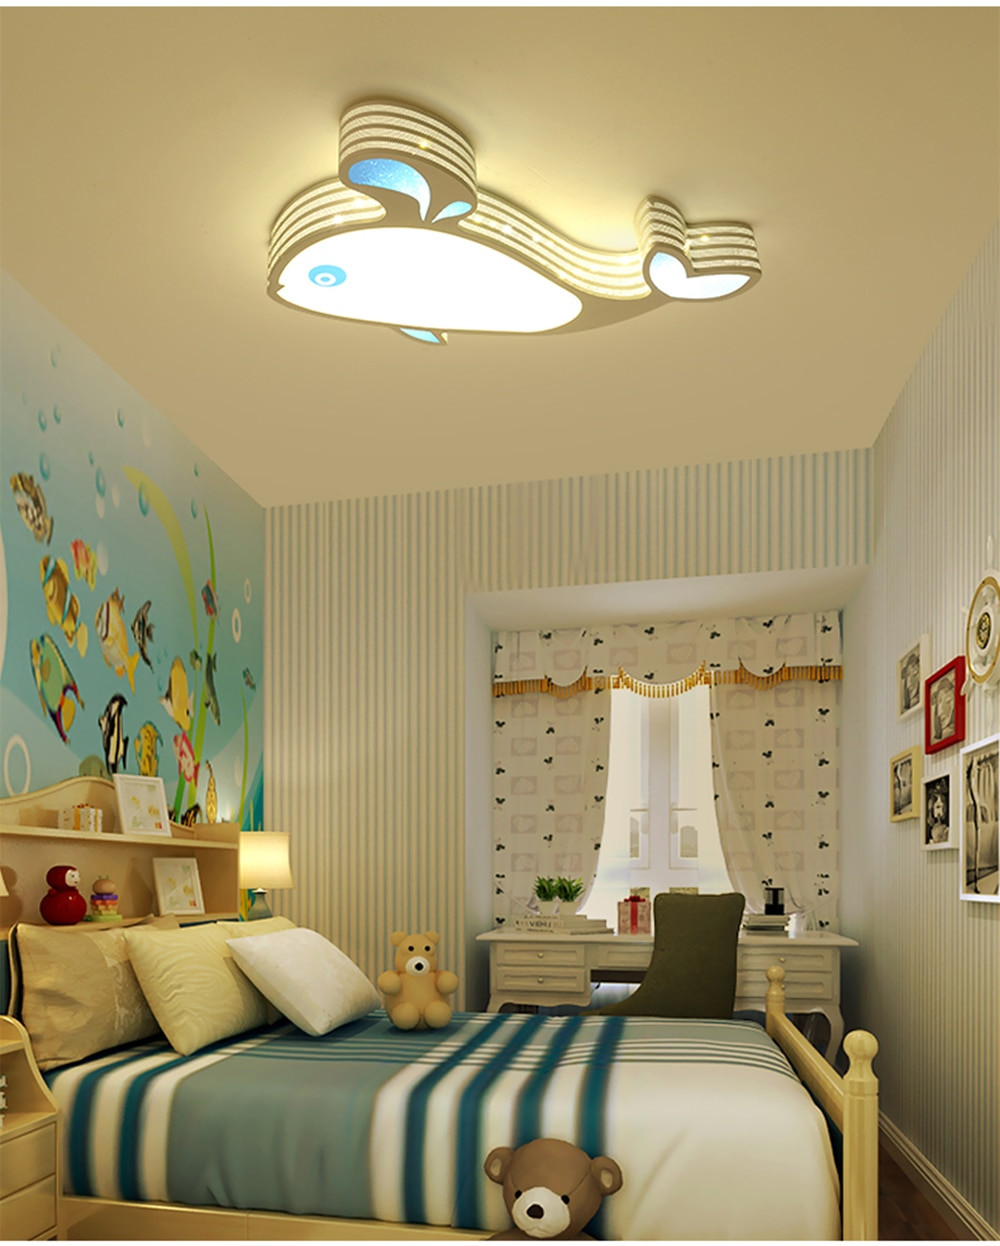 Led Lights For Kids Room
 HGhomeart kids lights bedroom lighting LED Ceiling Lamp